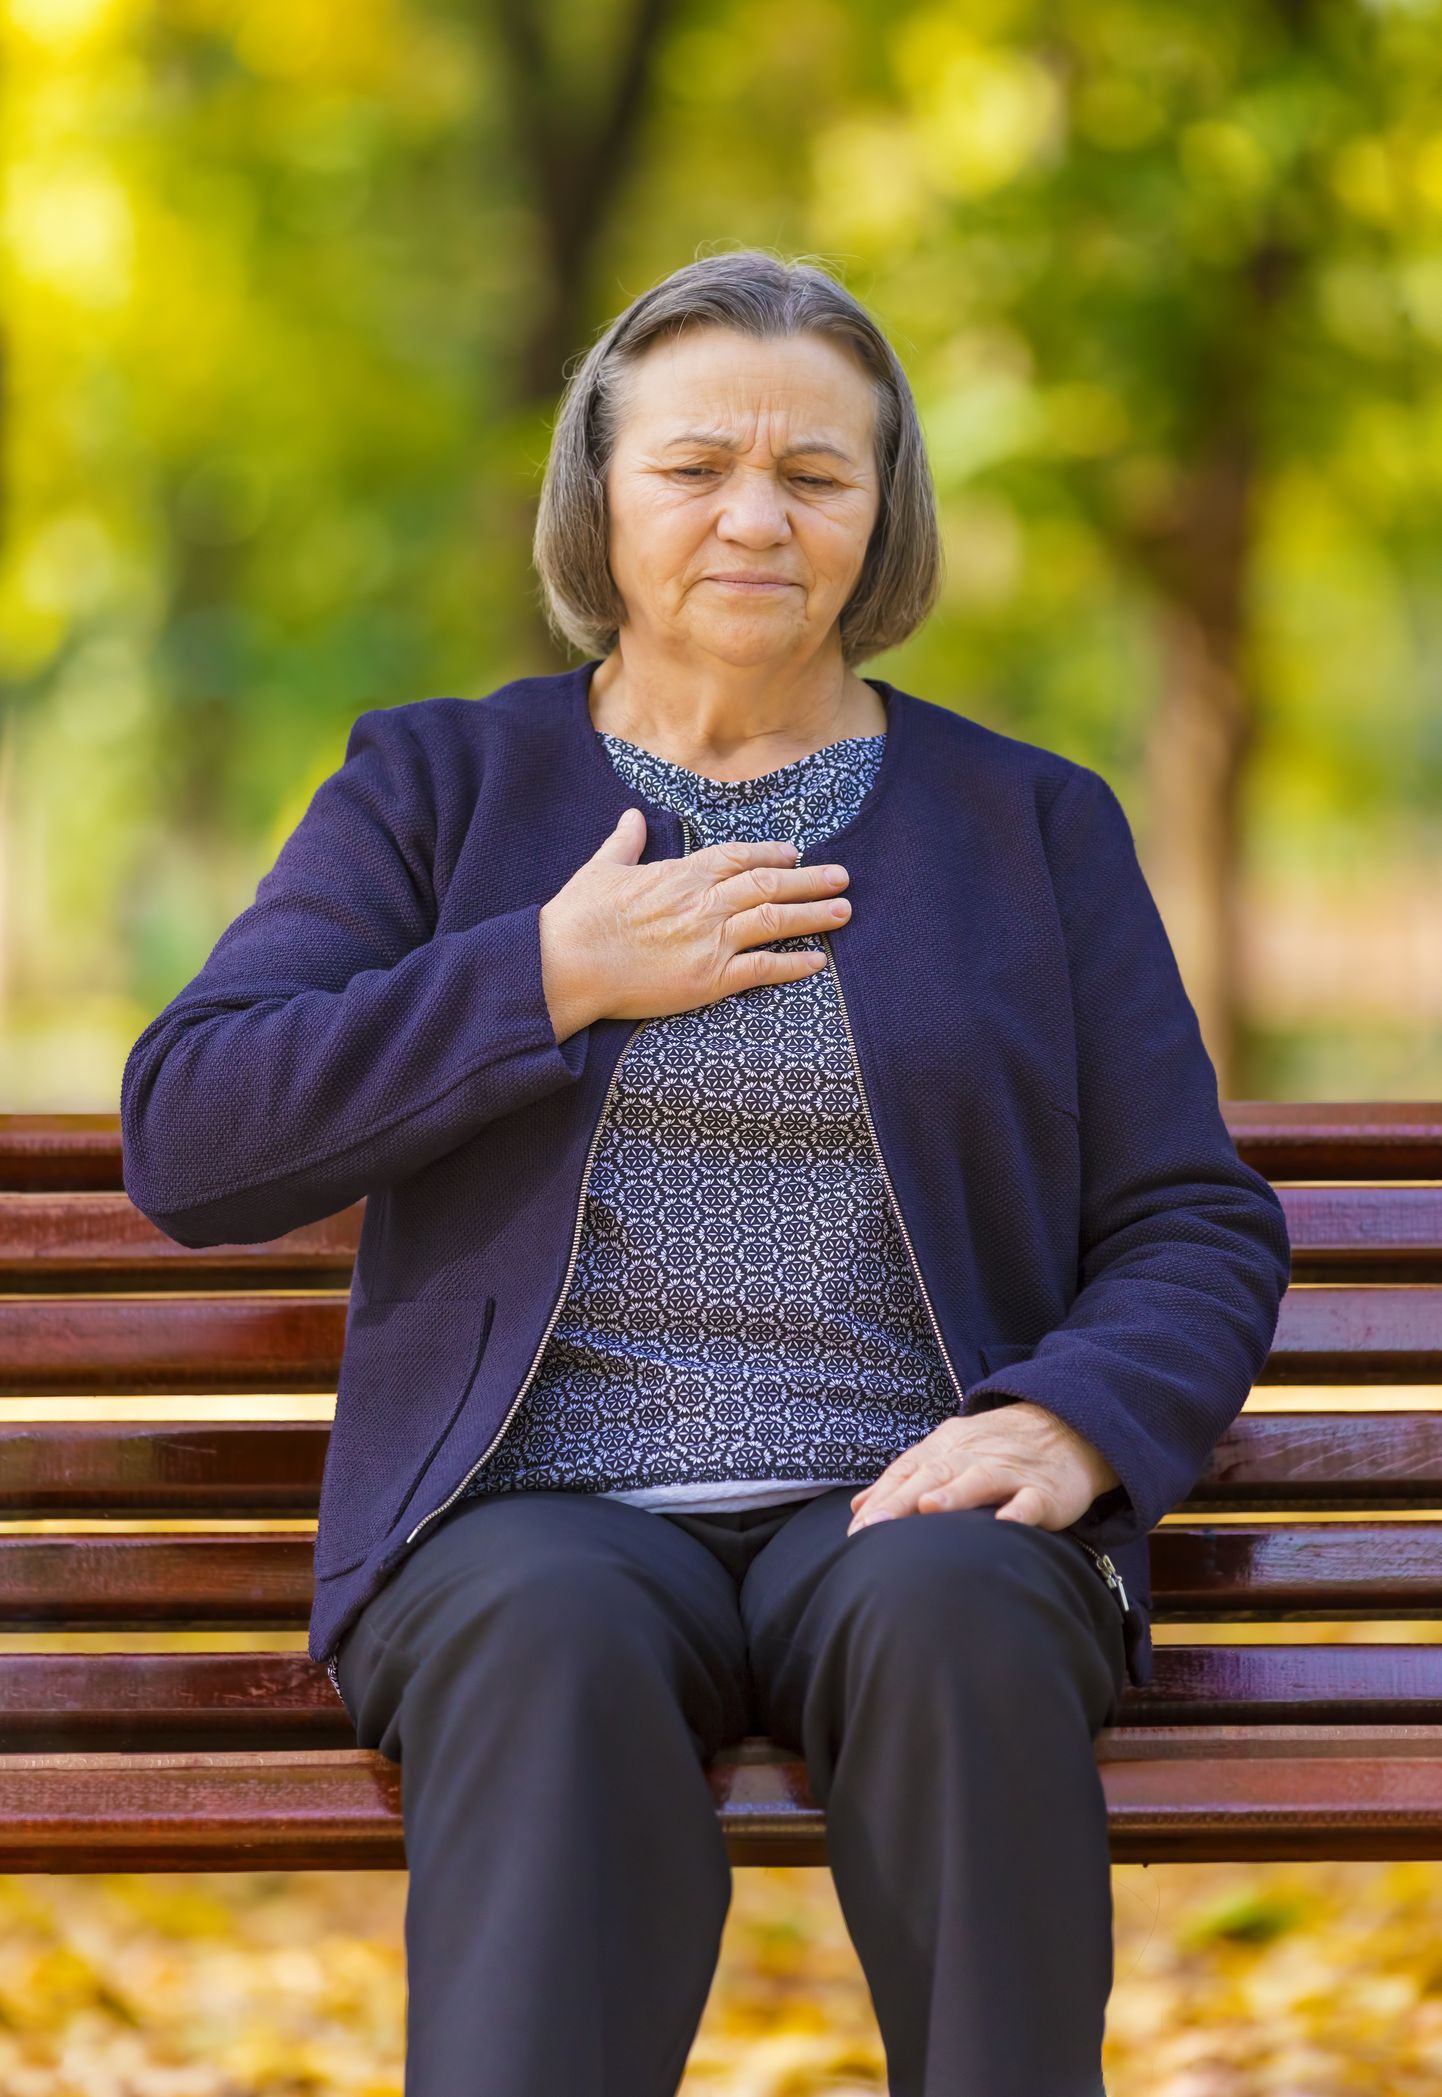 Südame- ja veresoonkonna haigusi põdevate eakate patsientide puhul tasub olla tähelepanelik ka depressiooniilmingute suhtes.